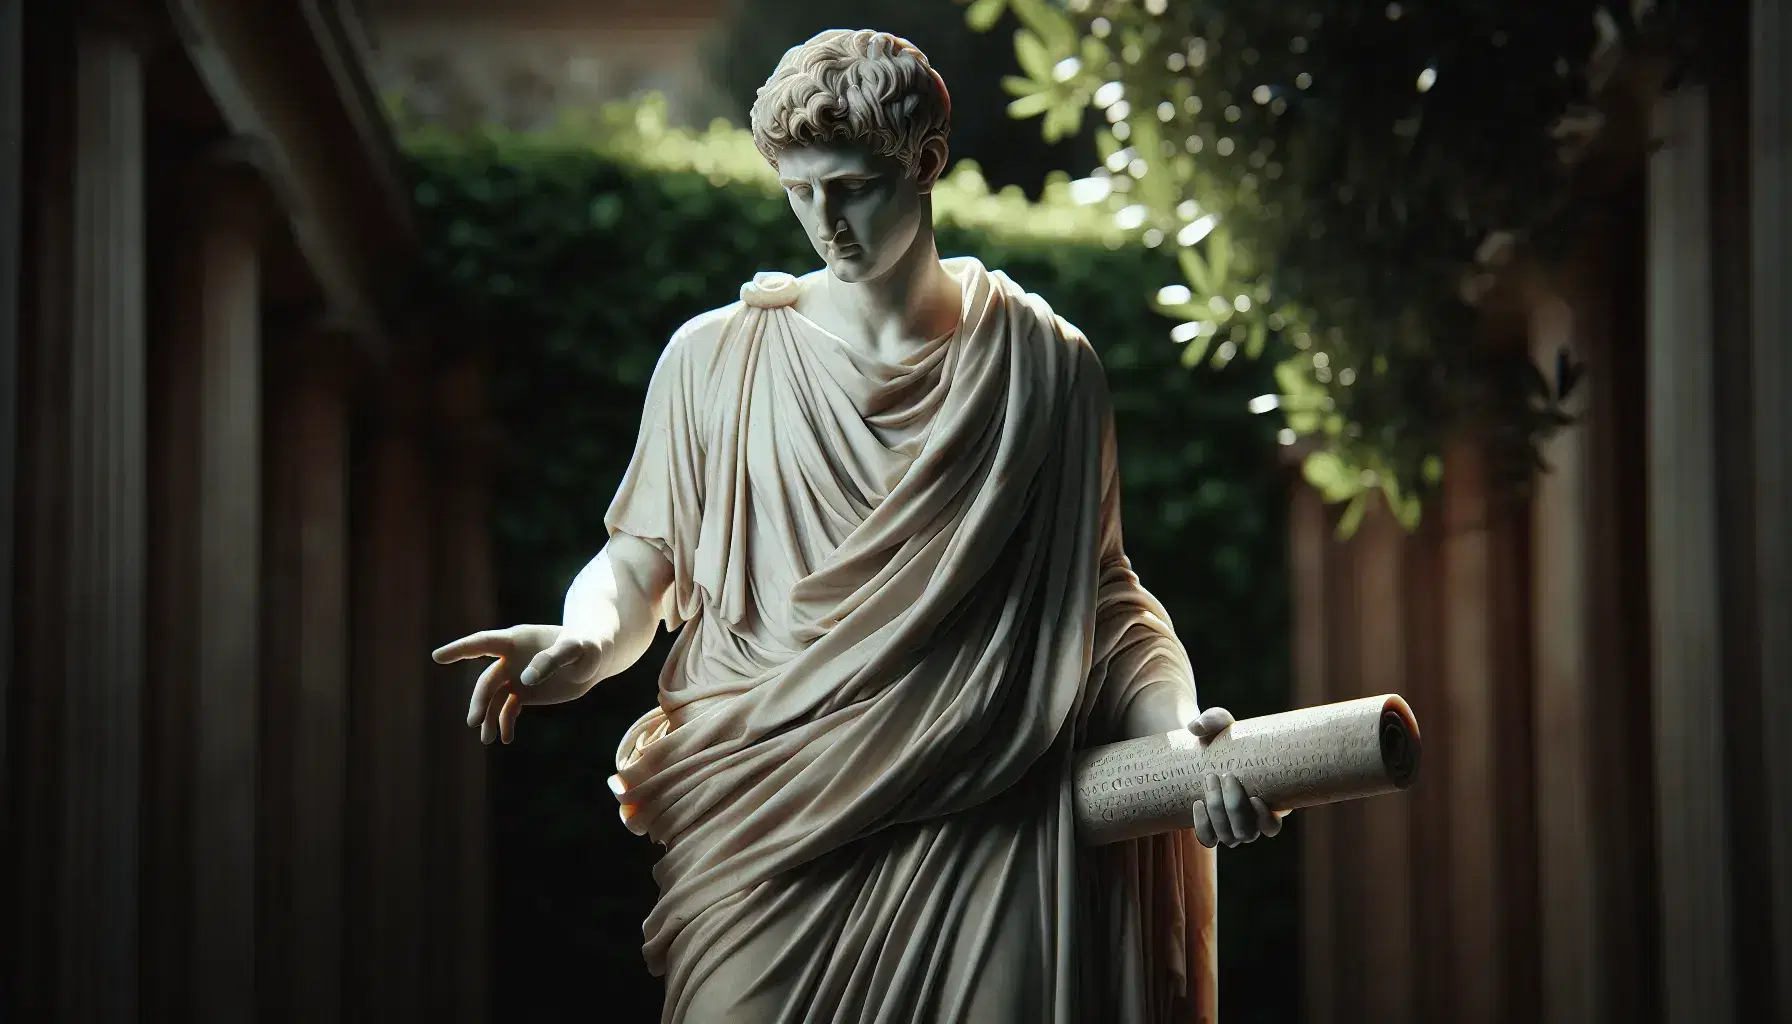 Estatua de mármol blanco de hombre pensativo con túnica, sosteniendo papiro y mano extendida, en jardín borroso iluminado naturalmente.